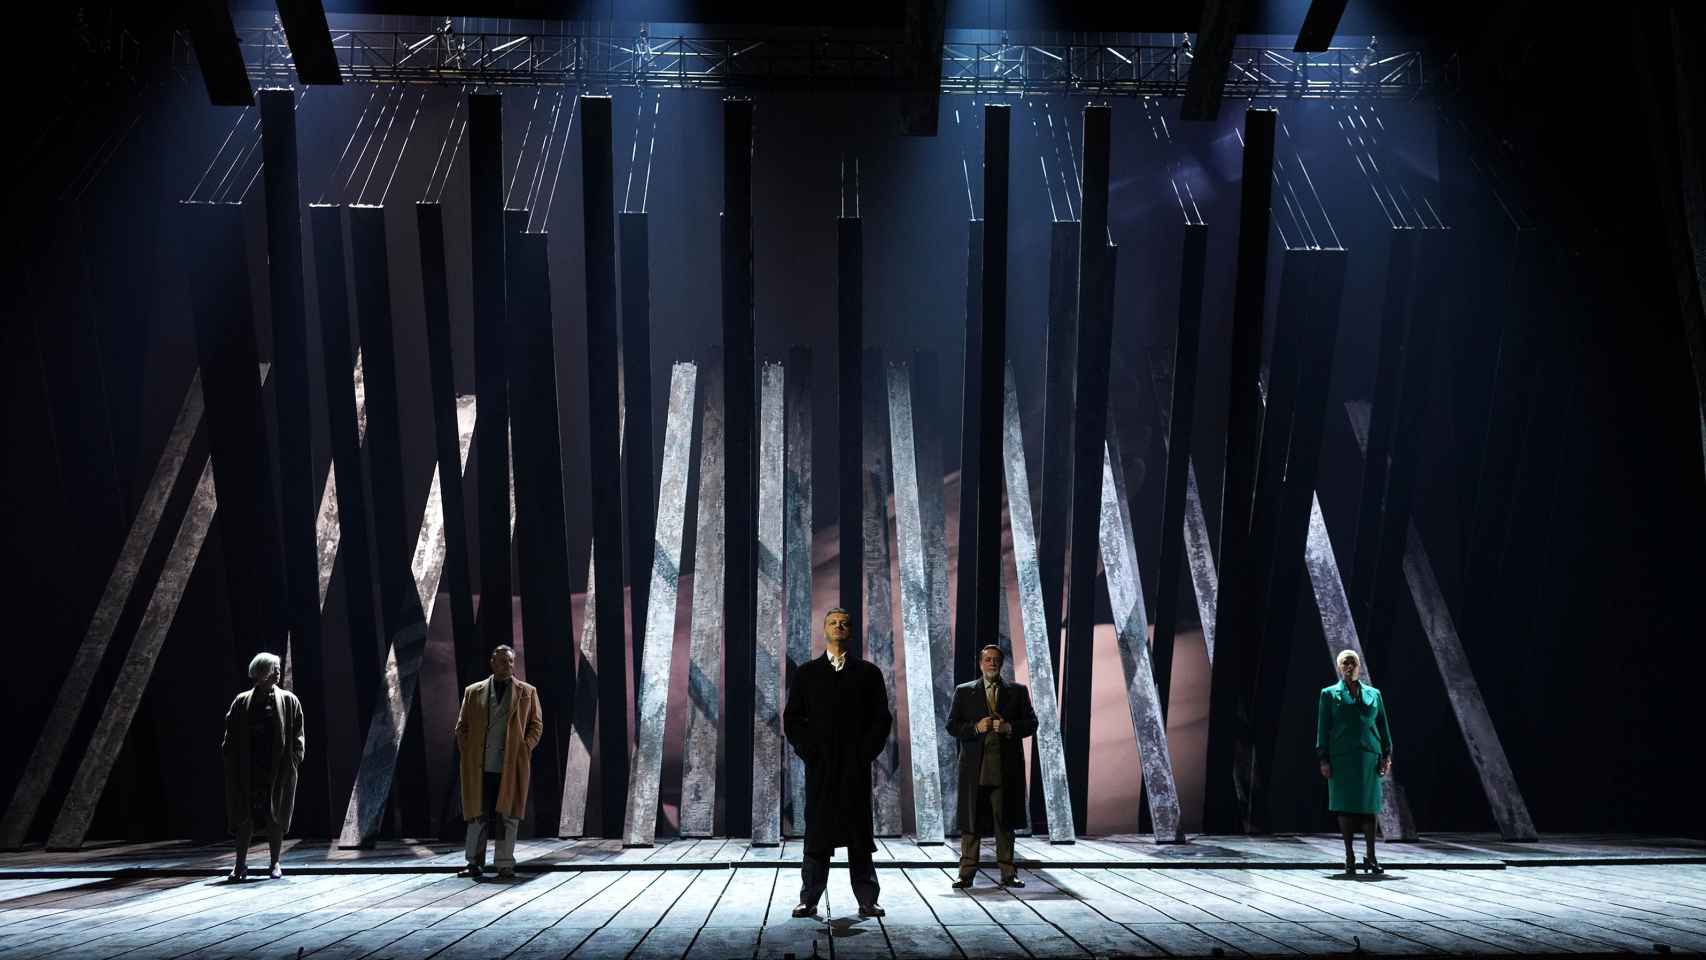 Escenografía de Rebecca Ringst para el montaje de 'Lear' estrenado en el Teatro Real. Foto: Javier del Real